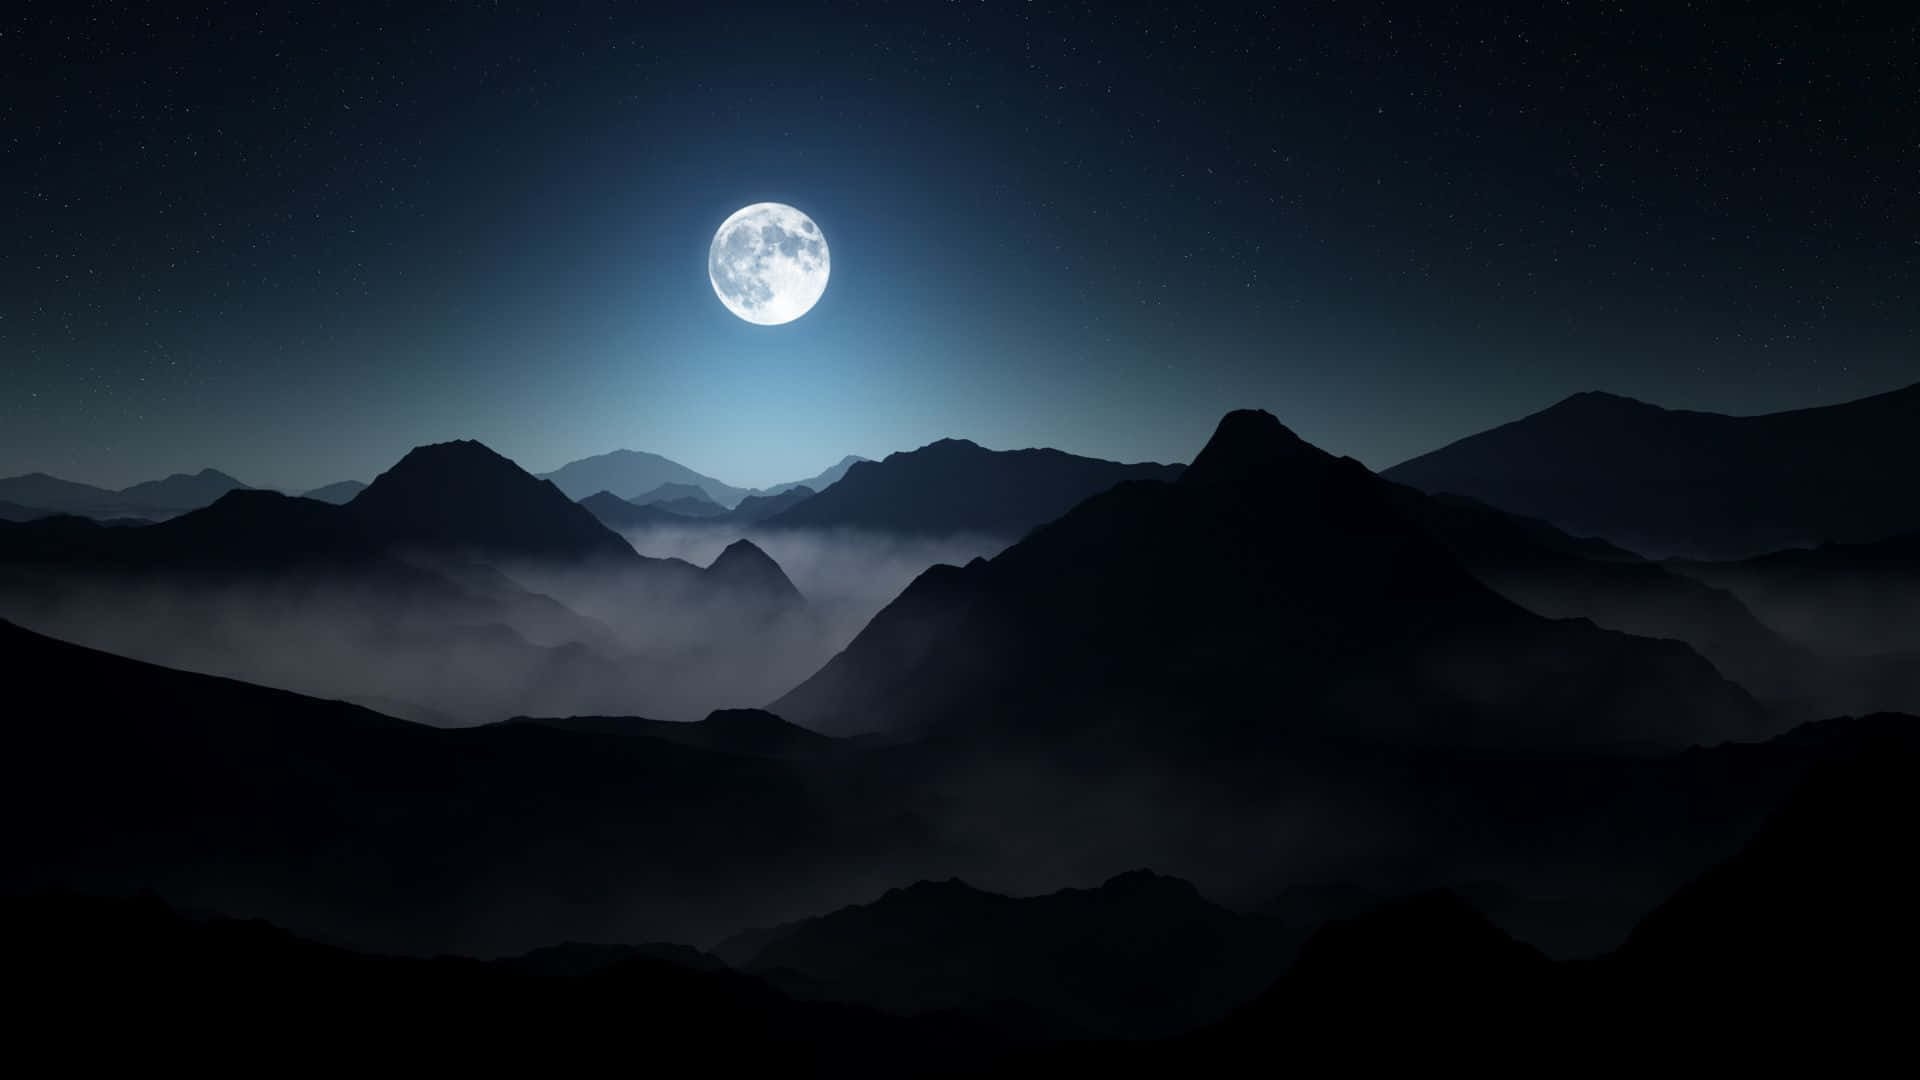 Beundraden Fantastiska Skönheten Hos En Vacker Måne.